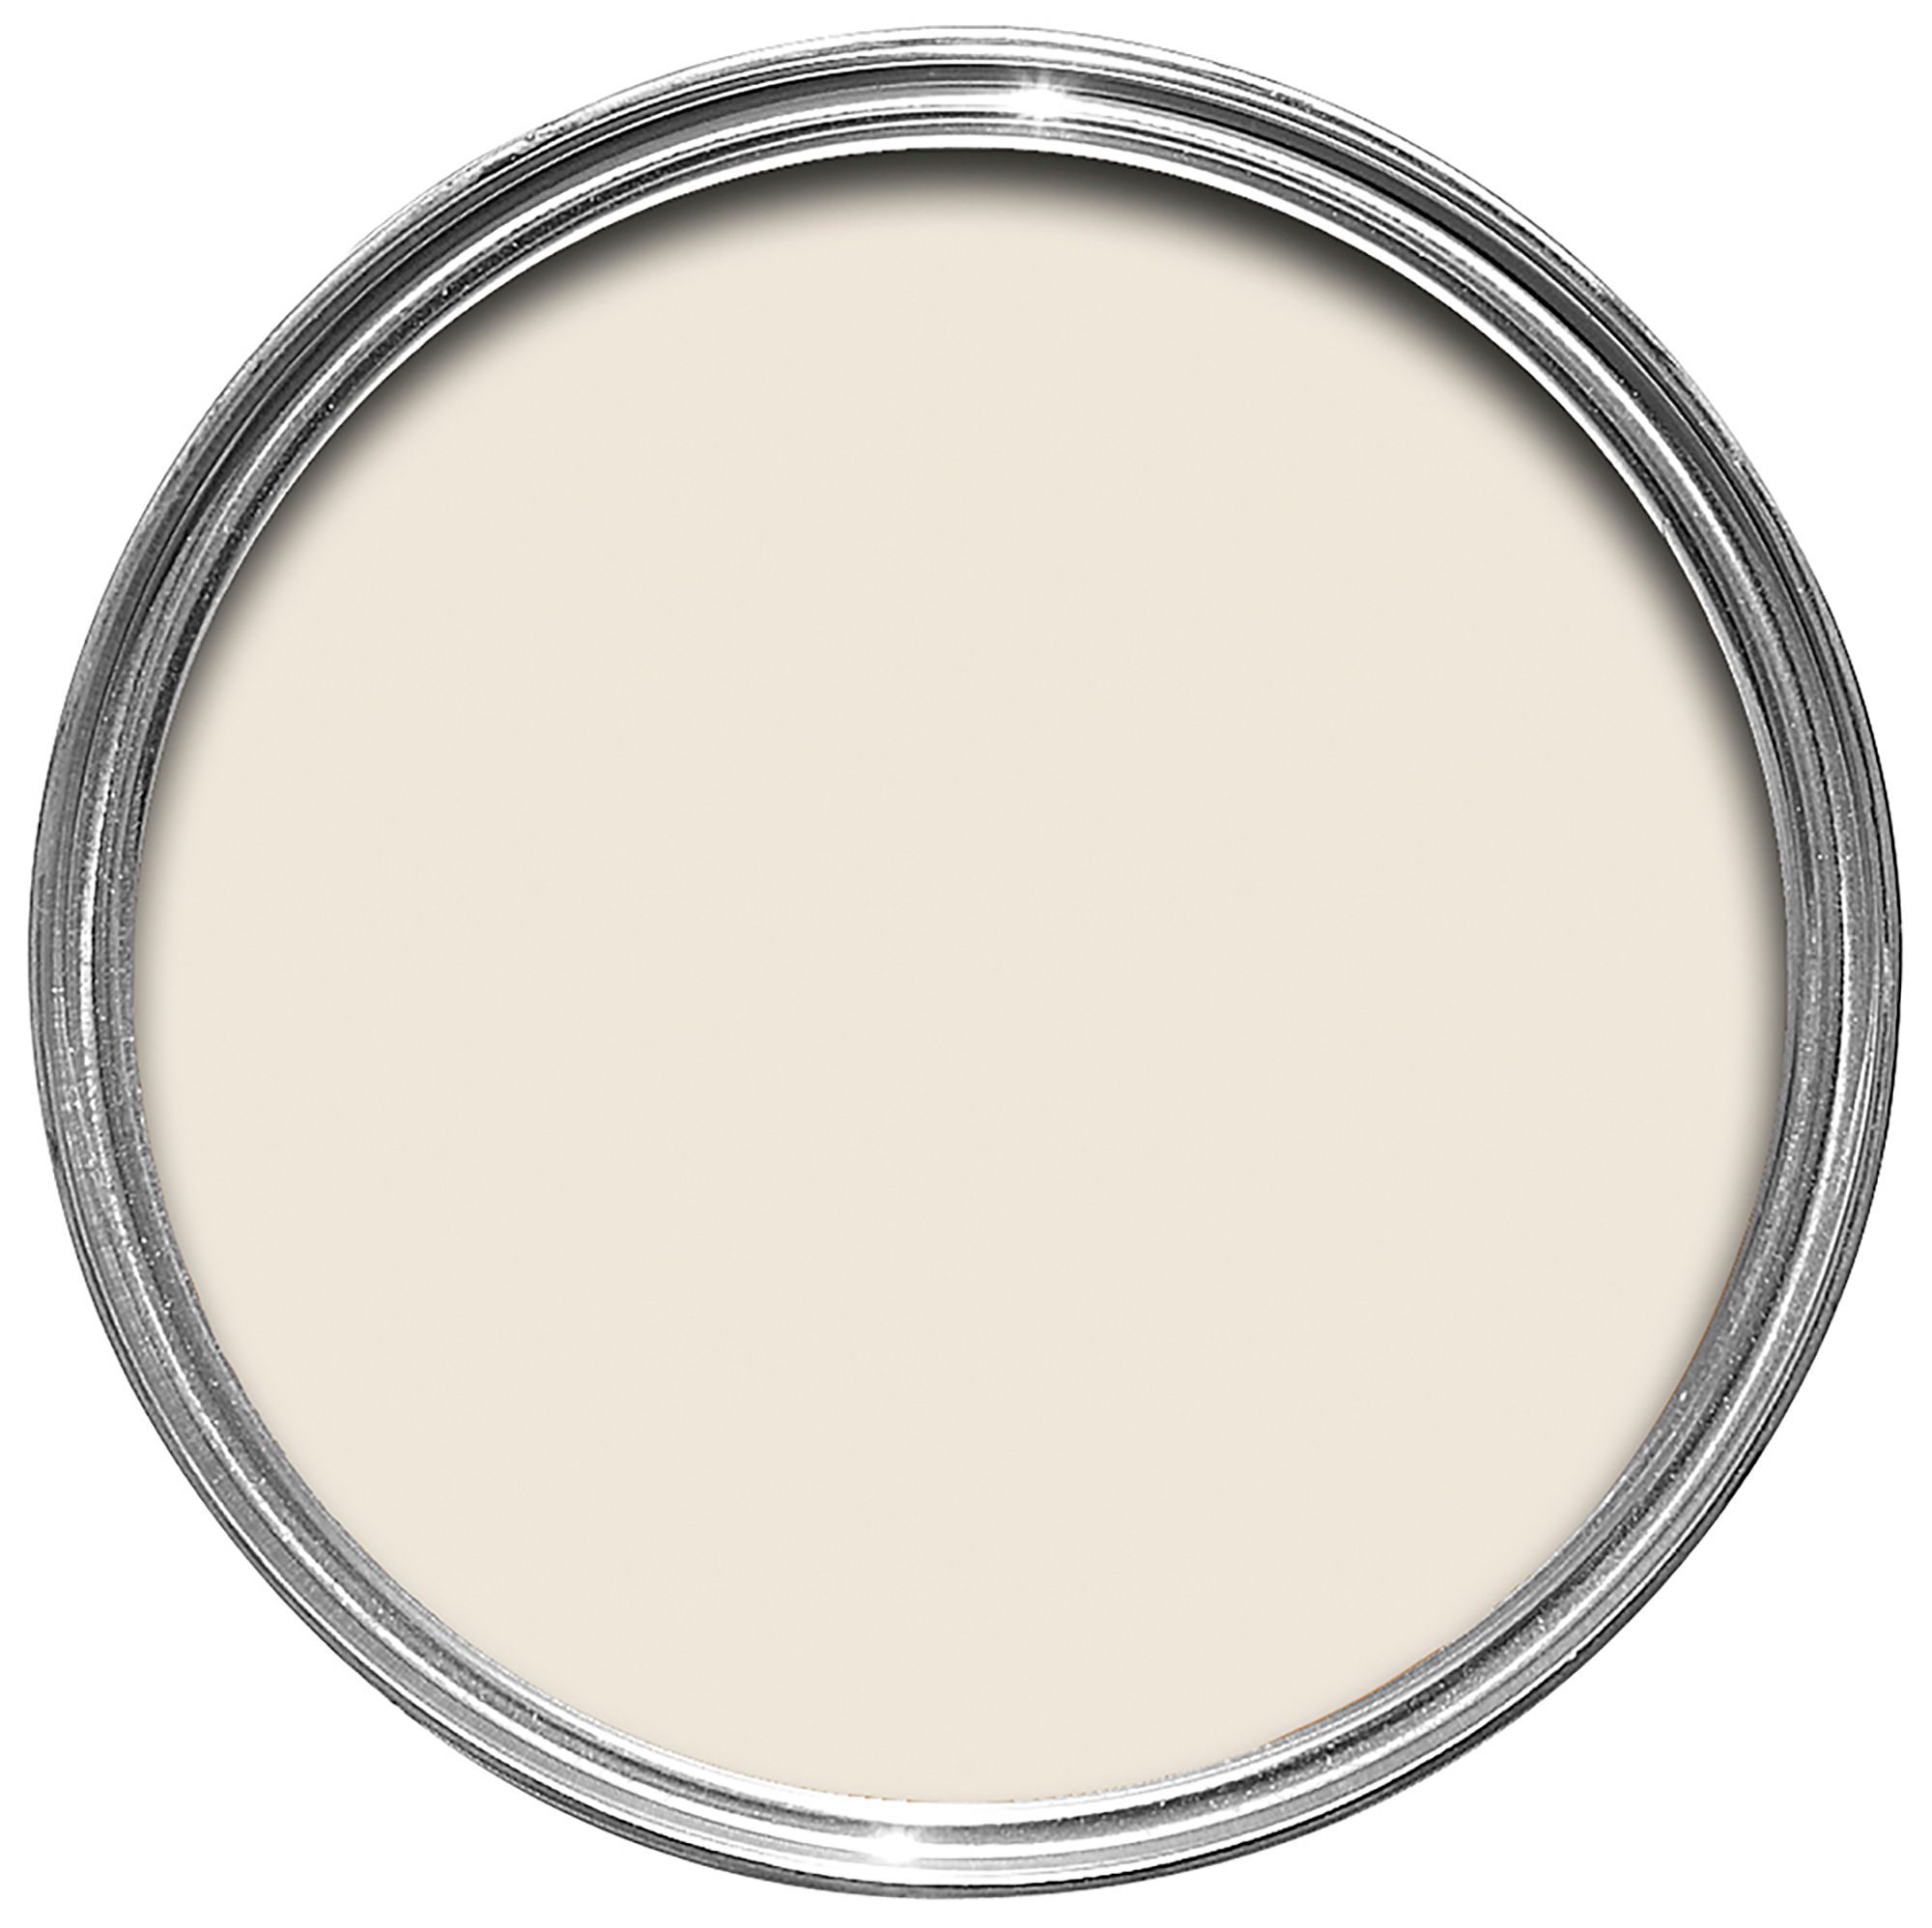 Dulux Easycare Washable & Tough Almond White Matt Emulsion Paint 2.5L